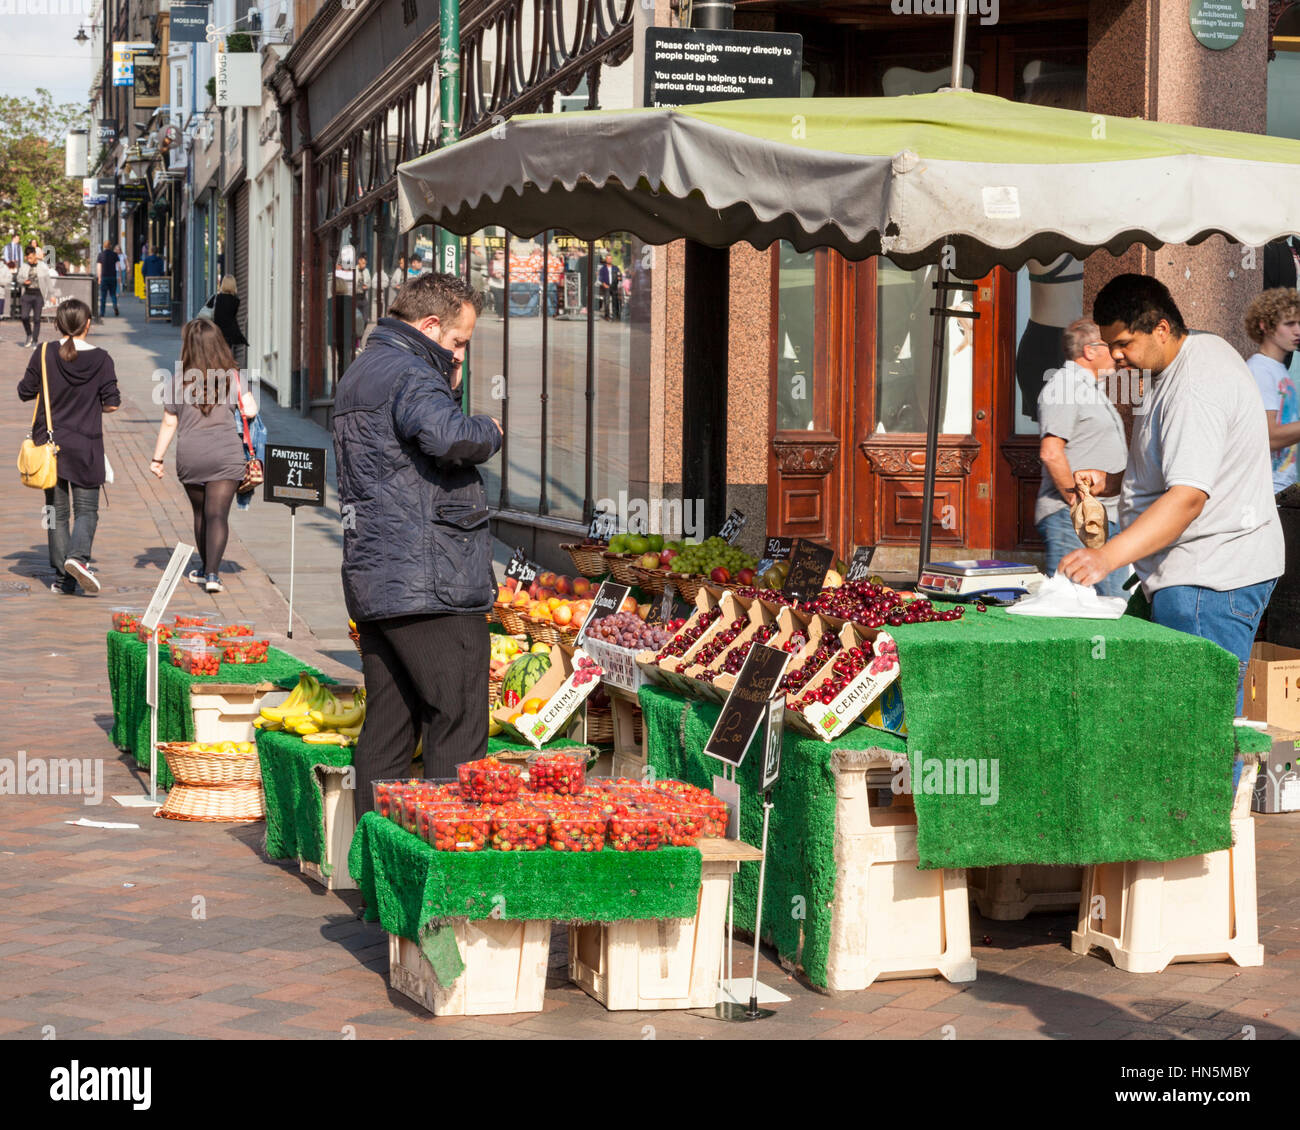 Vendeur de fruits. Opérateur de marché vendant des fruits à un client à son échoppe à Nottingham, Angleterre, Royaume-Uni Banque D'Images